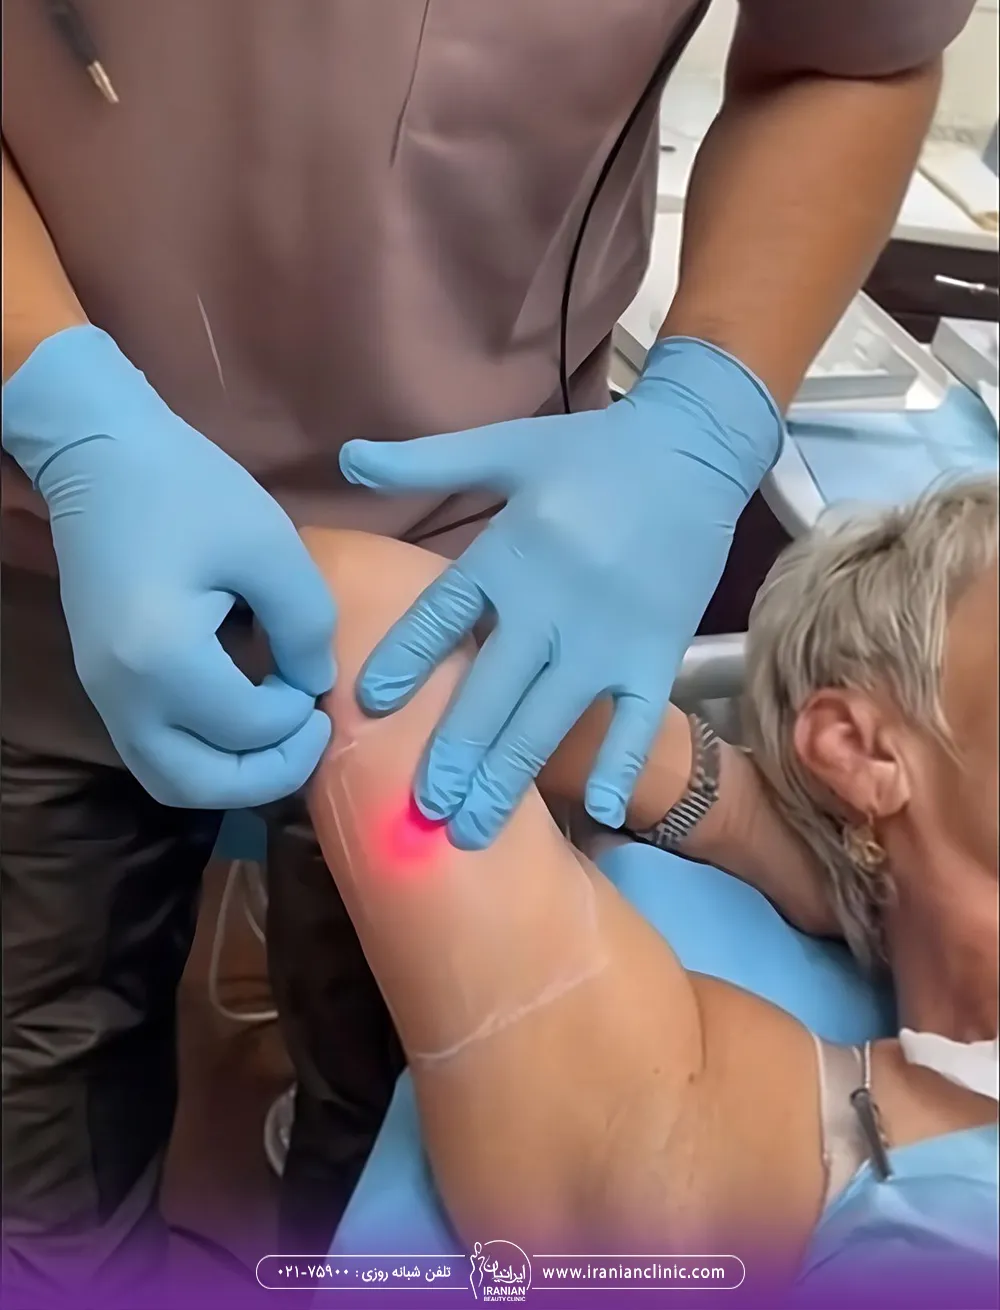 پزشک در حال انجام اندولیفت روی بازوی مراجعه کننده زن - اندولیفت بازو